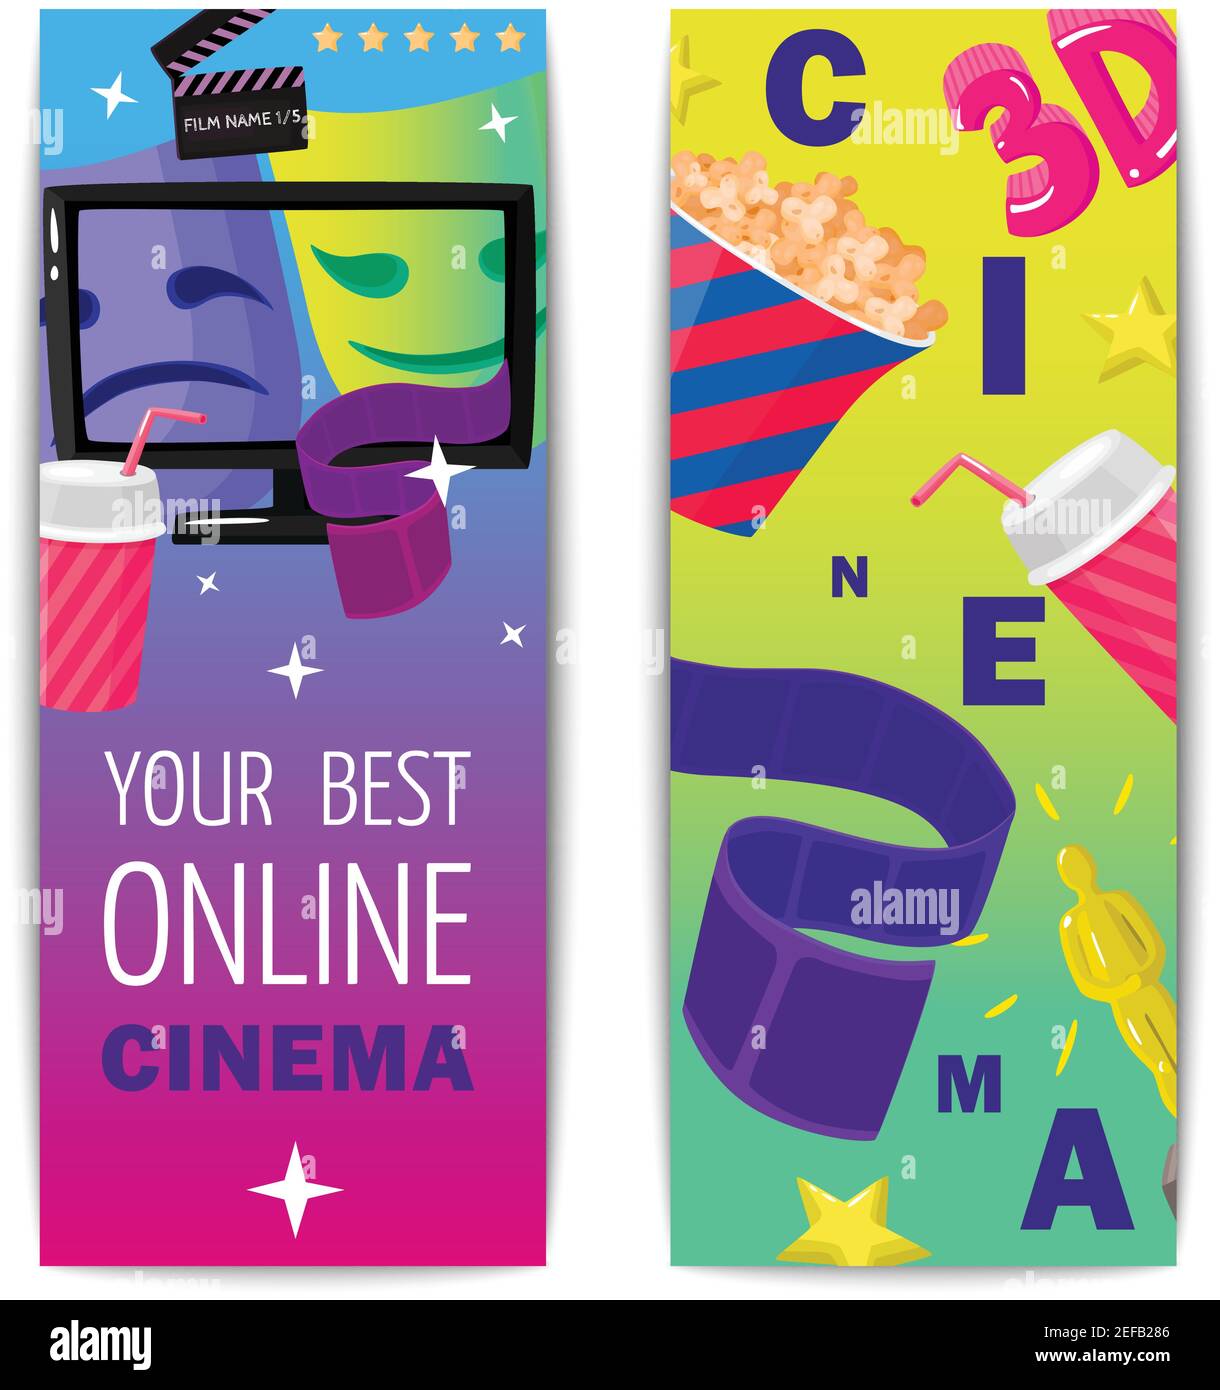 Cinema deux bannières verticales isolées avec prix figurine pop-corn 3d filmez en ligne des images en mode vectoriel plat Illustration de Vecteur